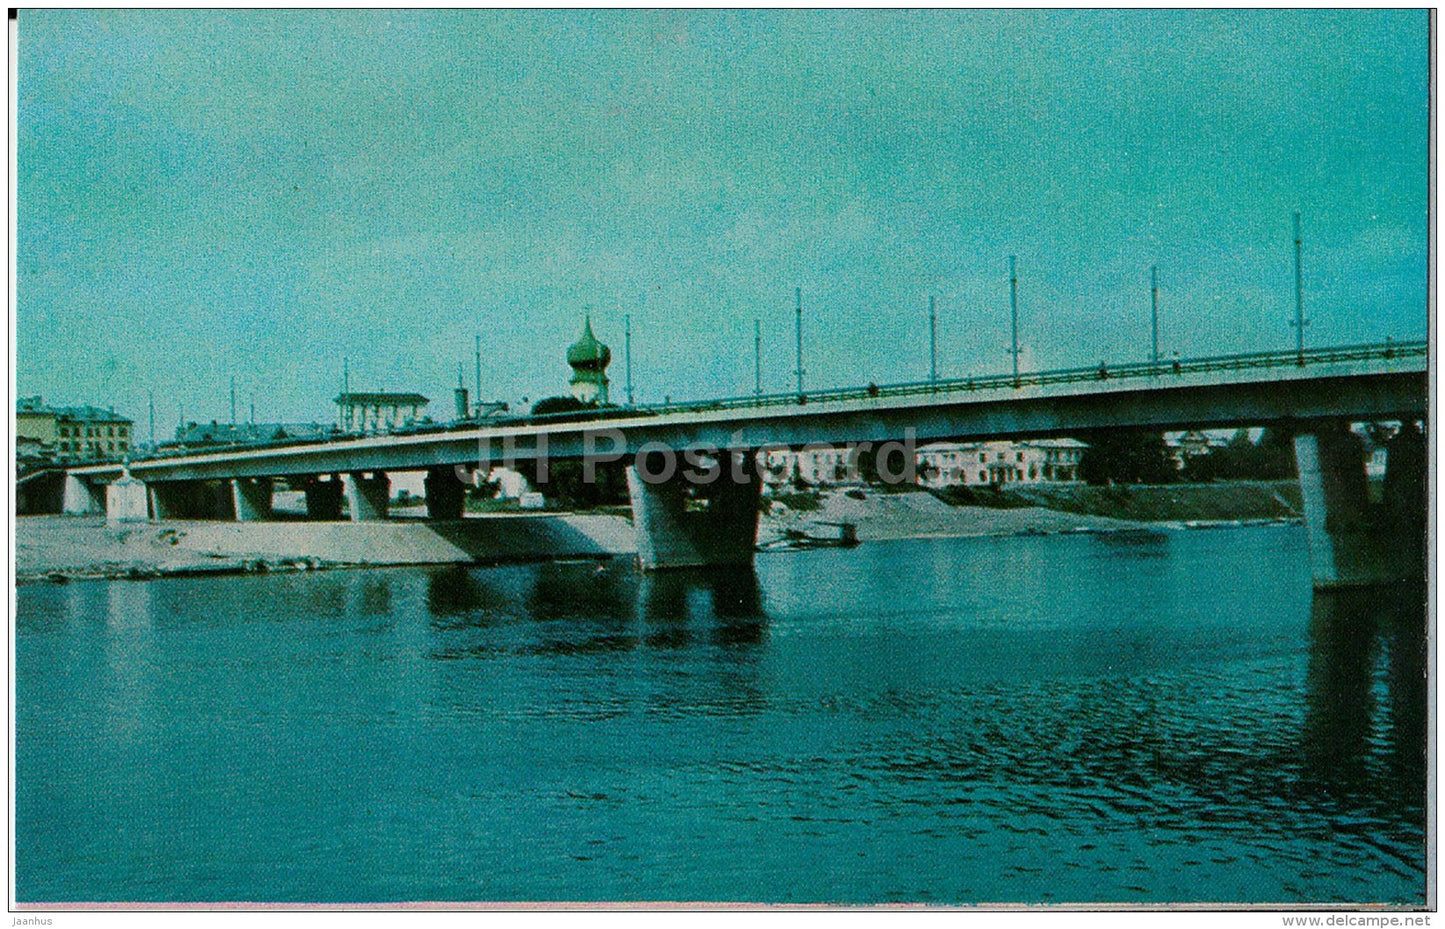 Soviet Army bridge - Pskov - 1974 - Russia USSR - unused - JH Postcards